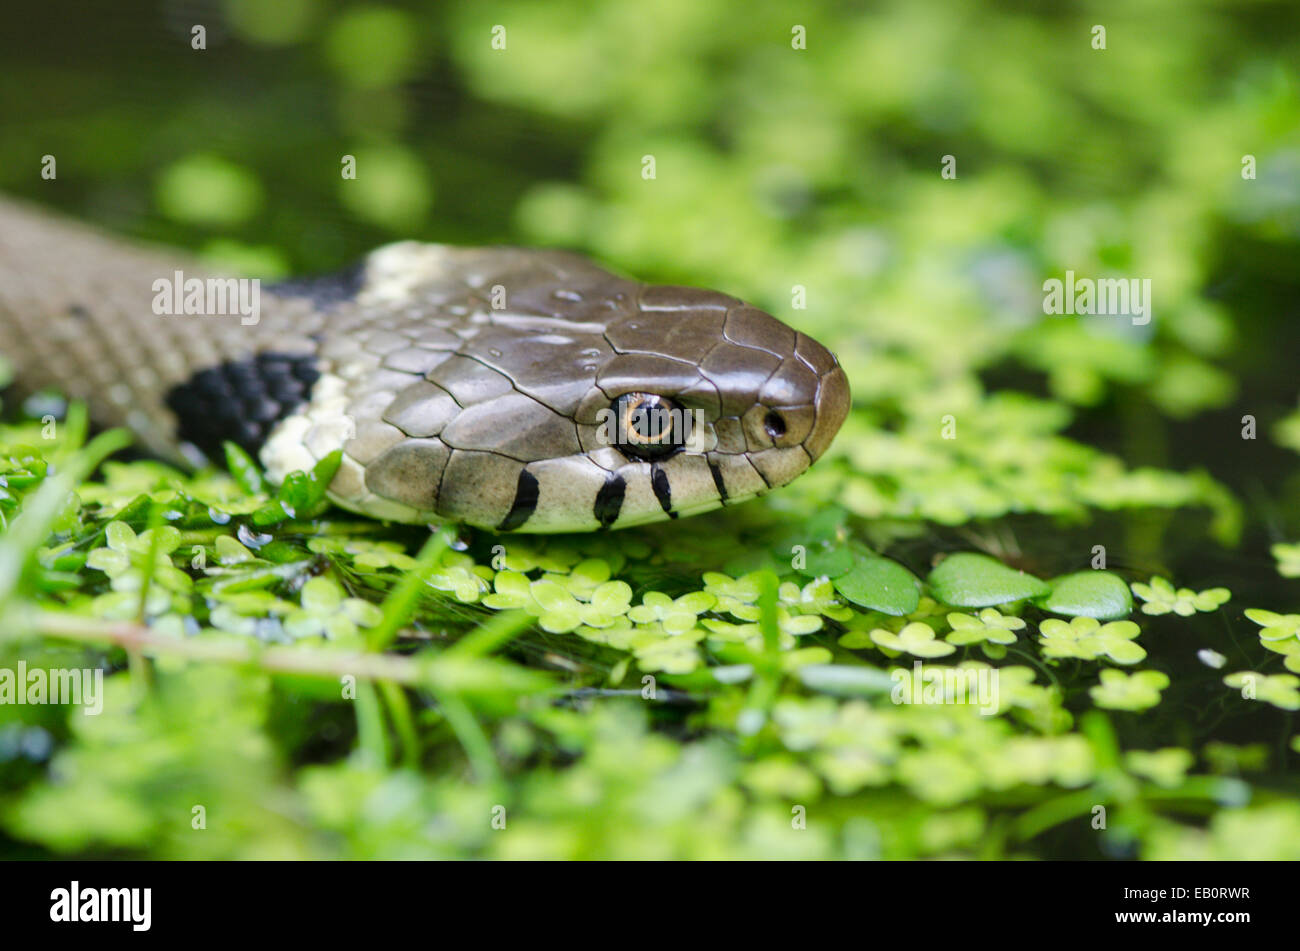 Grass snake [Natrix natrix] in pond water Stock Photo